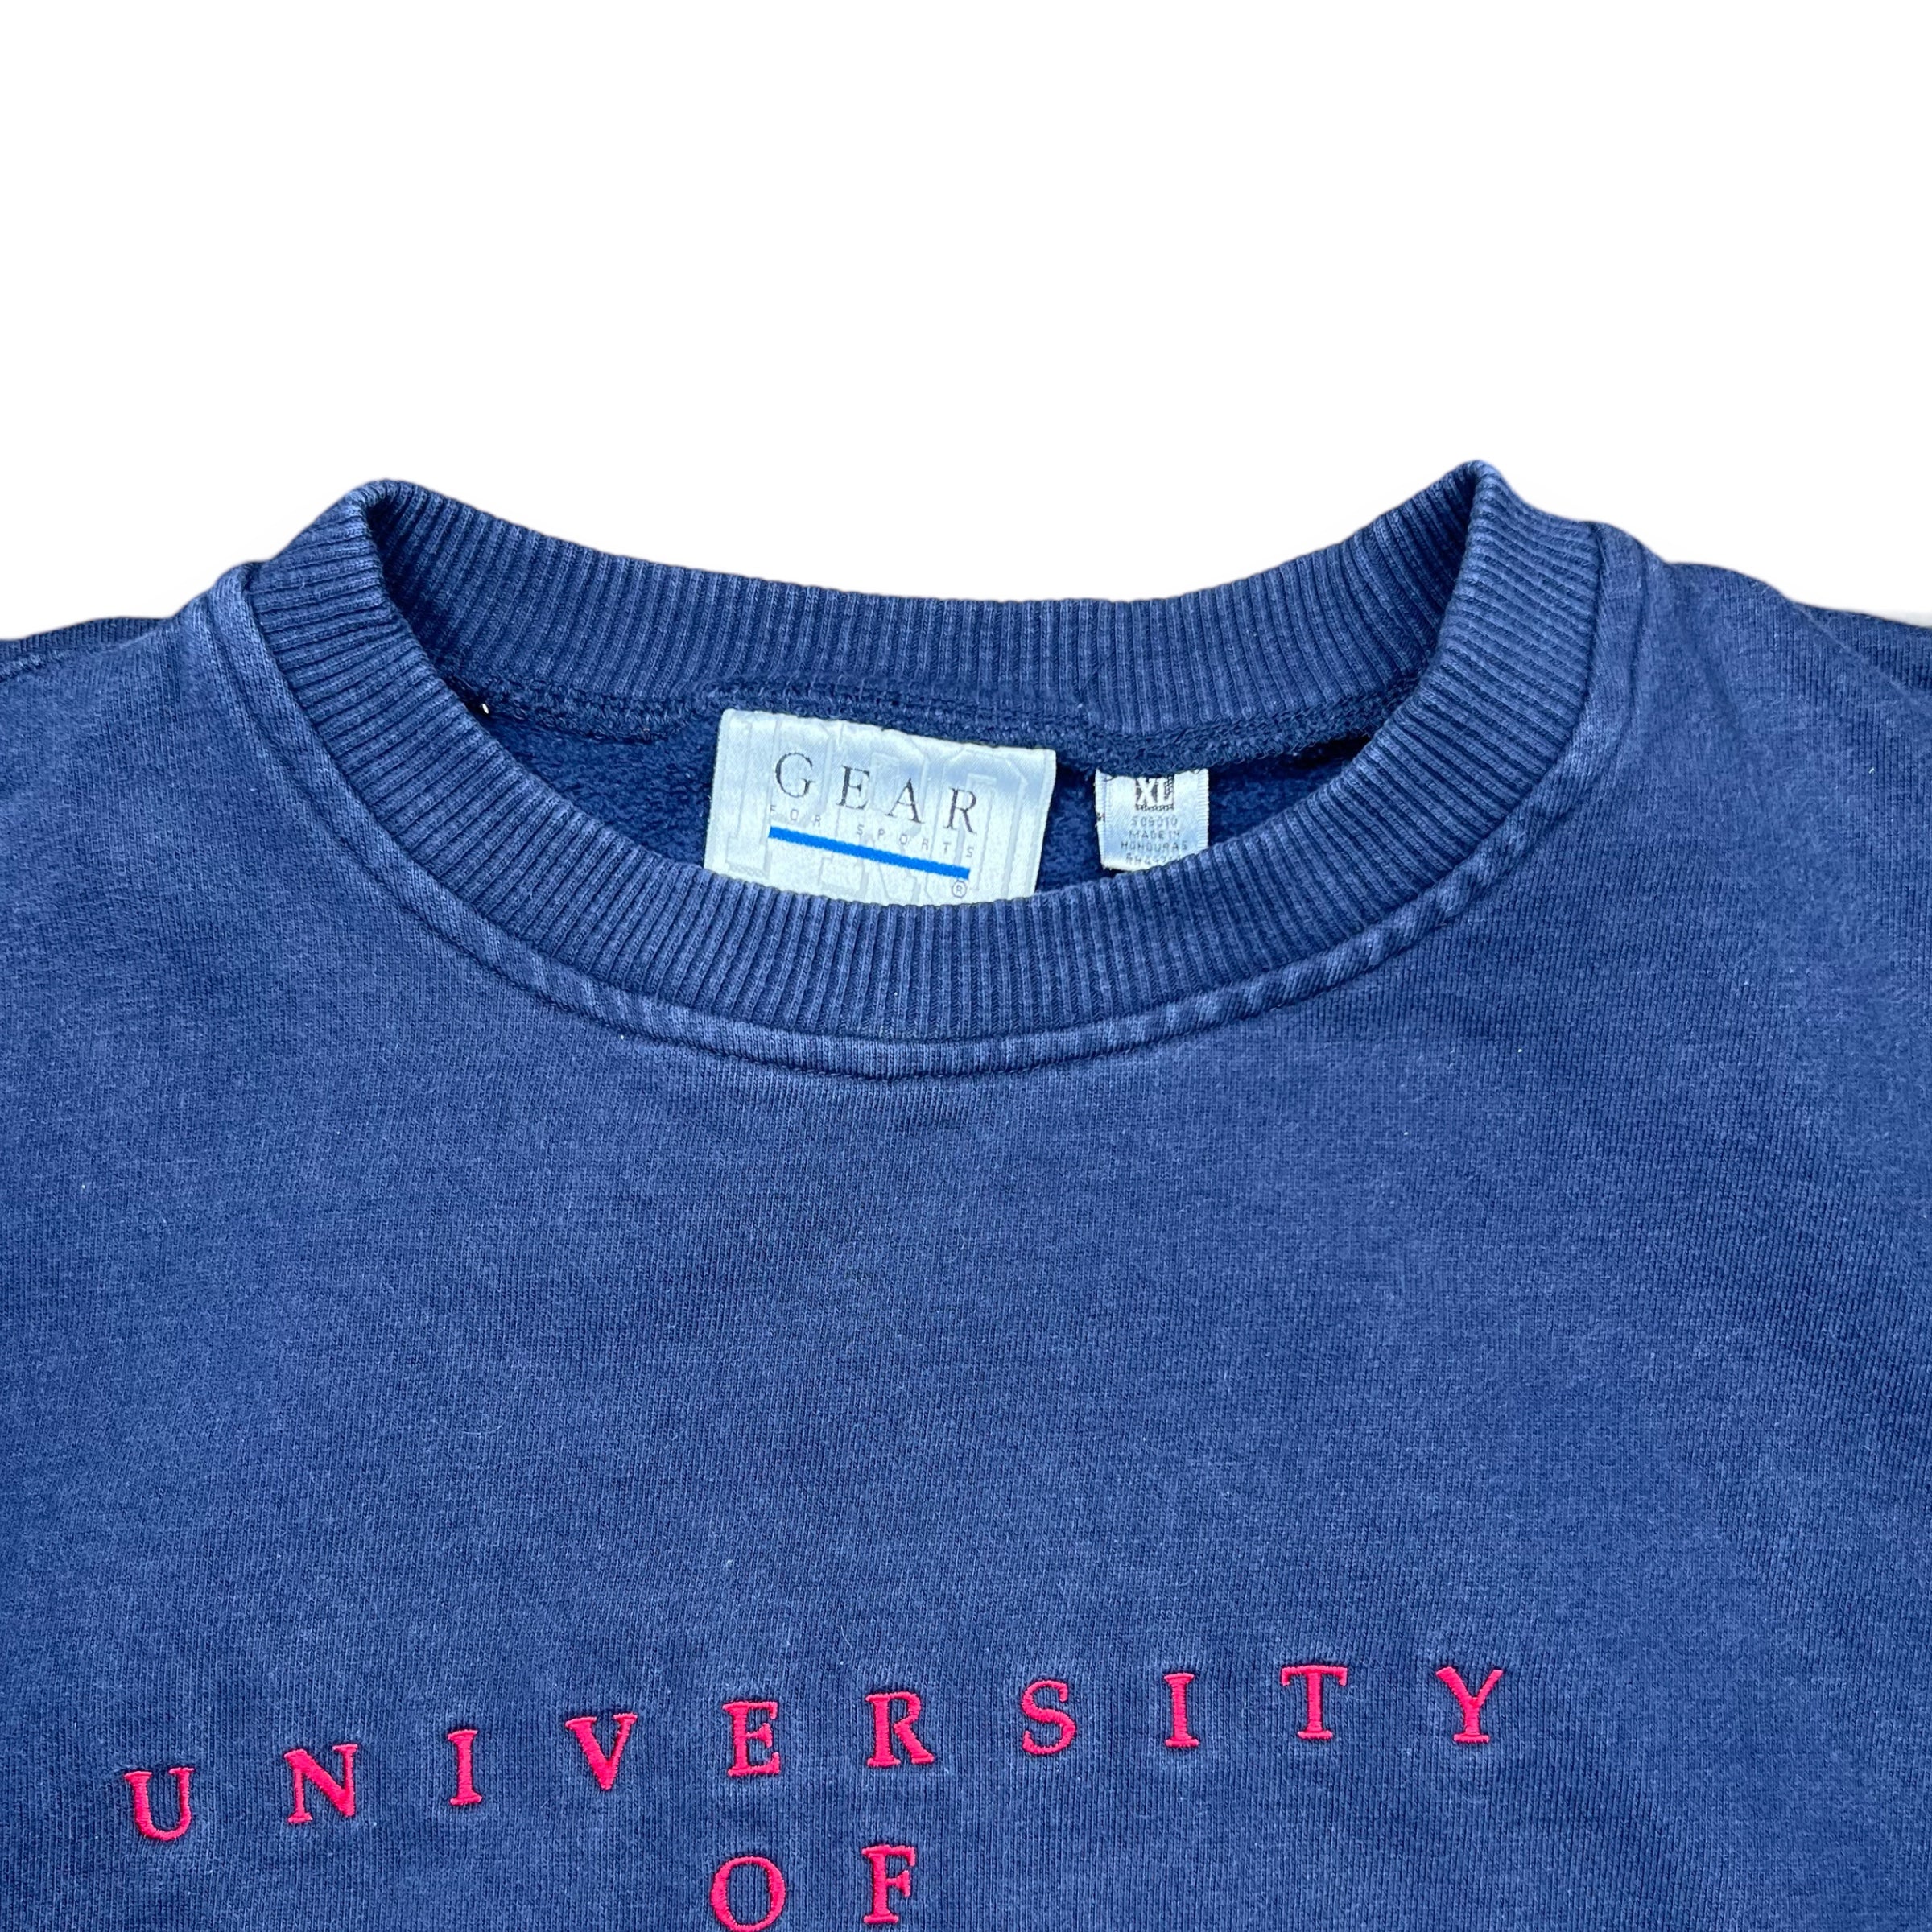 Vintage KU Sweatshirt - (M)